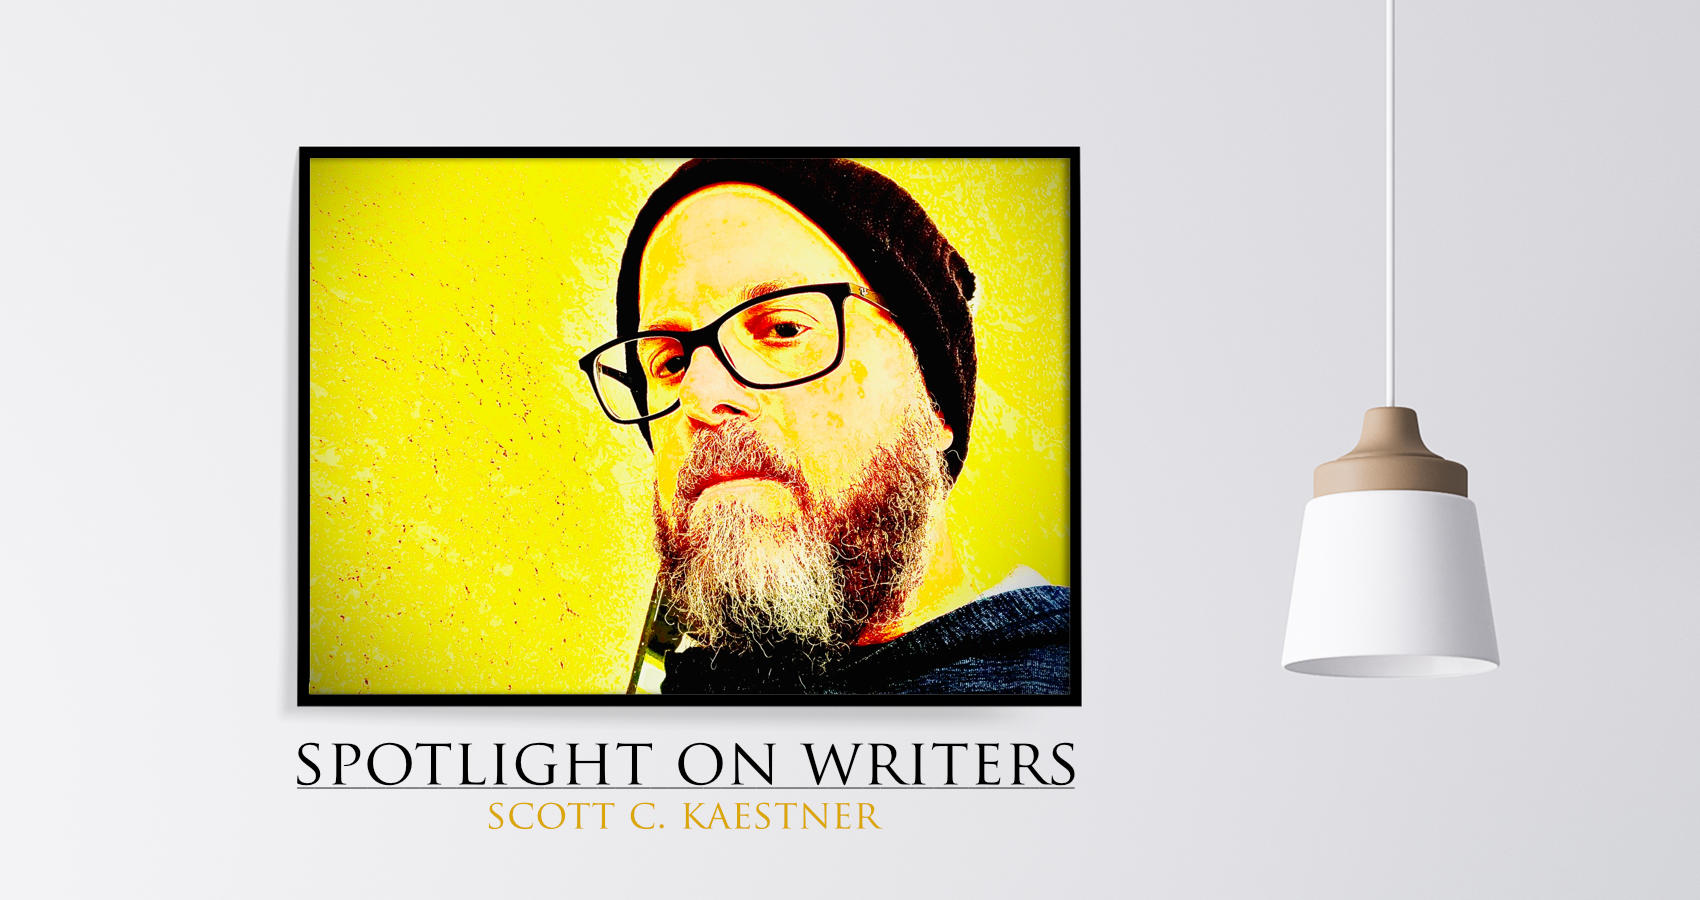 Spotlight On Writers - Scott C. Kaestner, interview at Spillwords.com